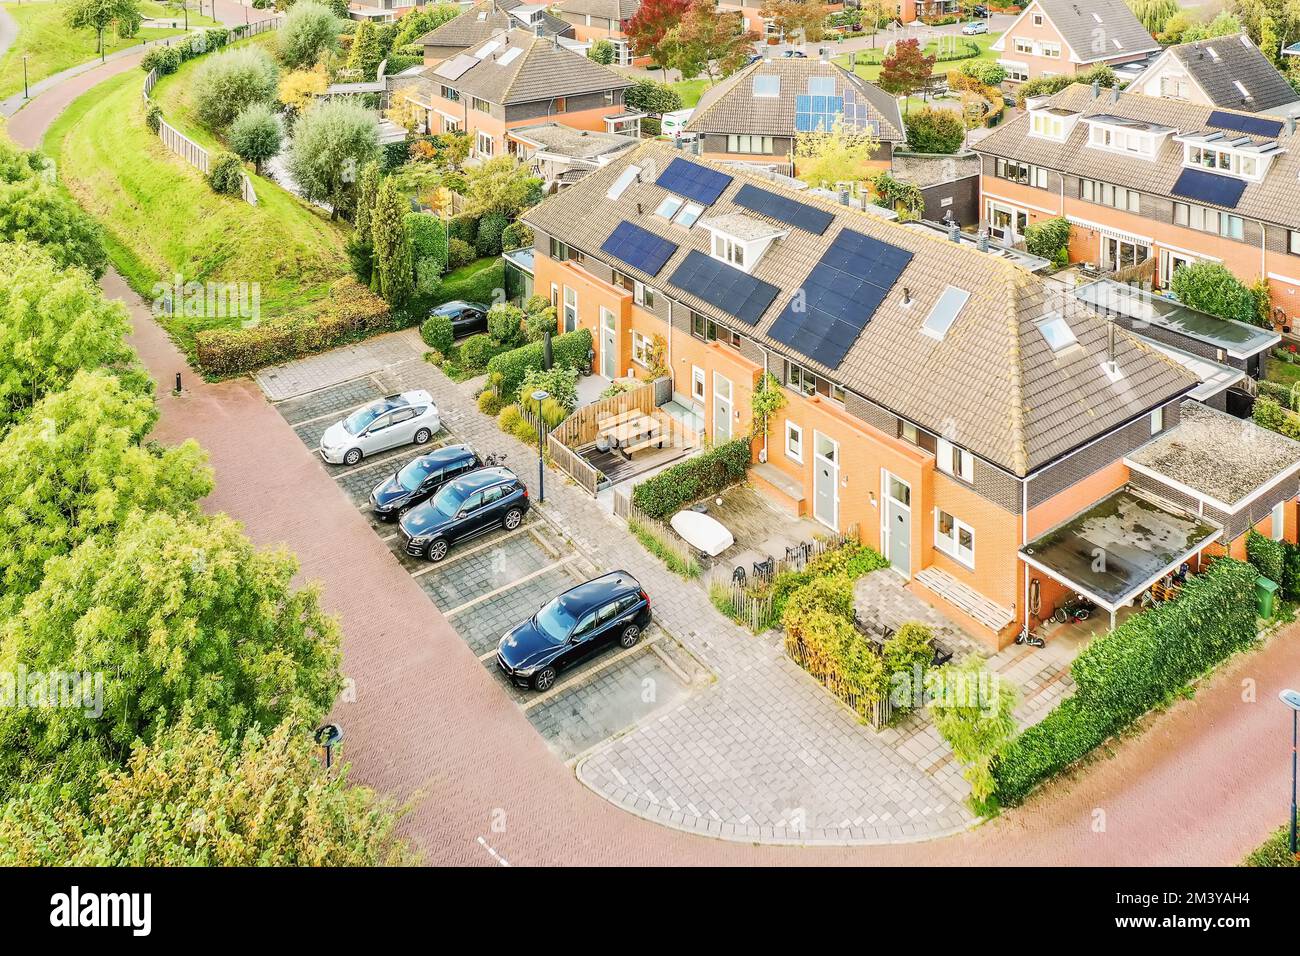 case con pannelli solari sul tetto e alcune auto parcheggiate nel vialetto, vista aerea dall'alto foto stock Foto Stock